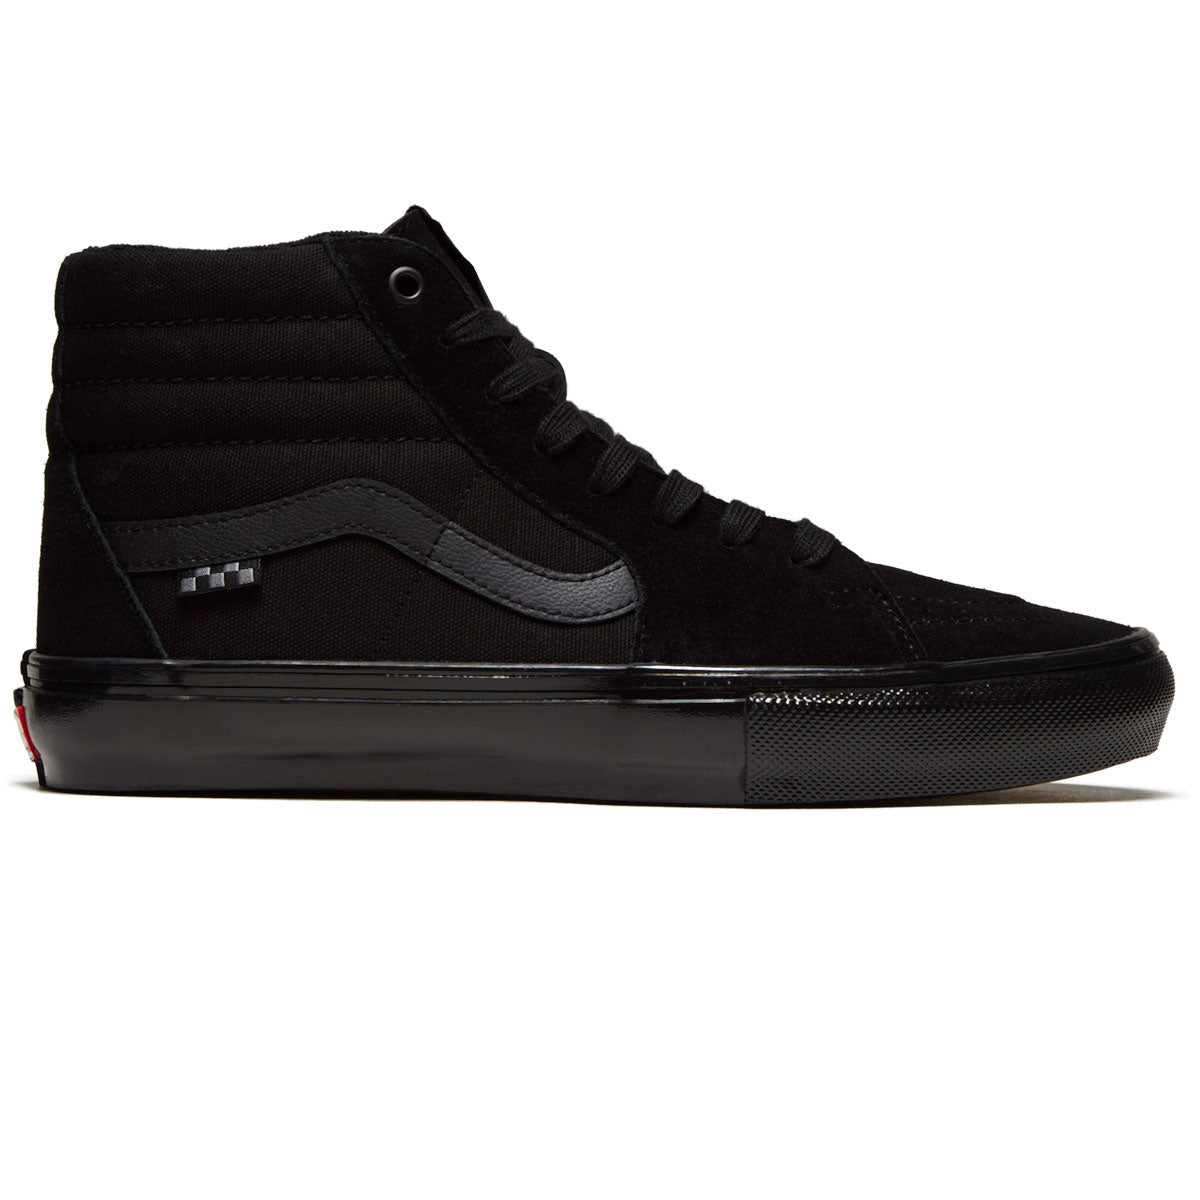 Vans Skate Sk8-hi Shoes - Black/Black image 1